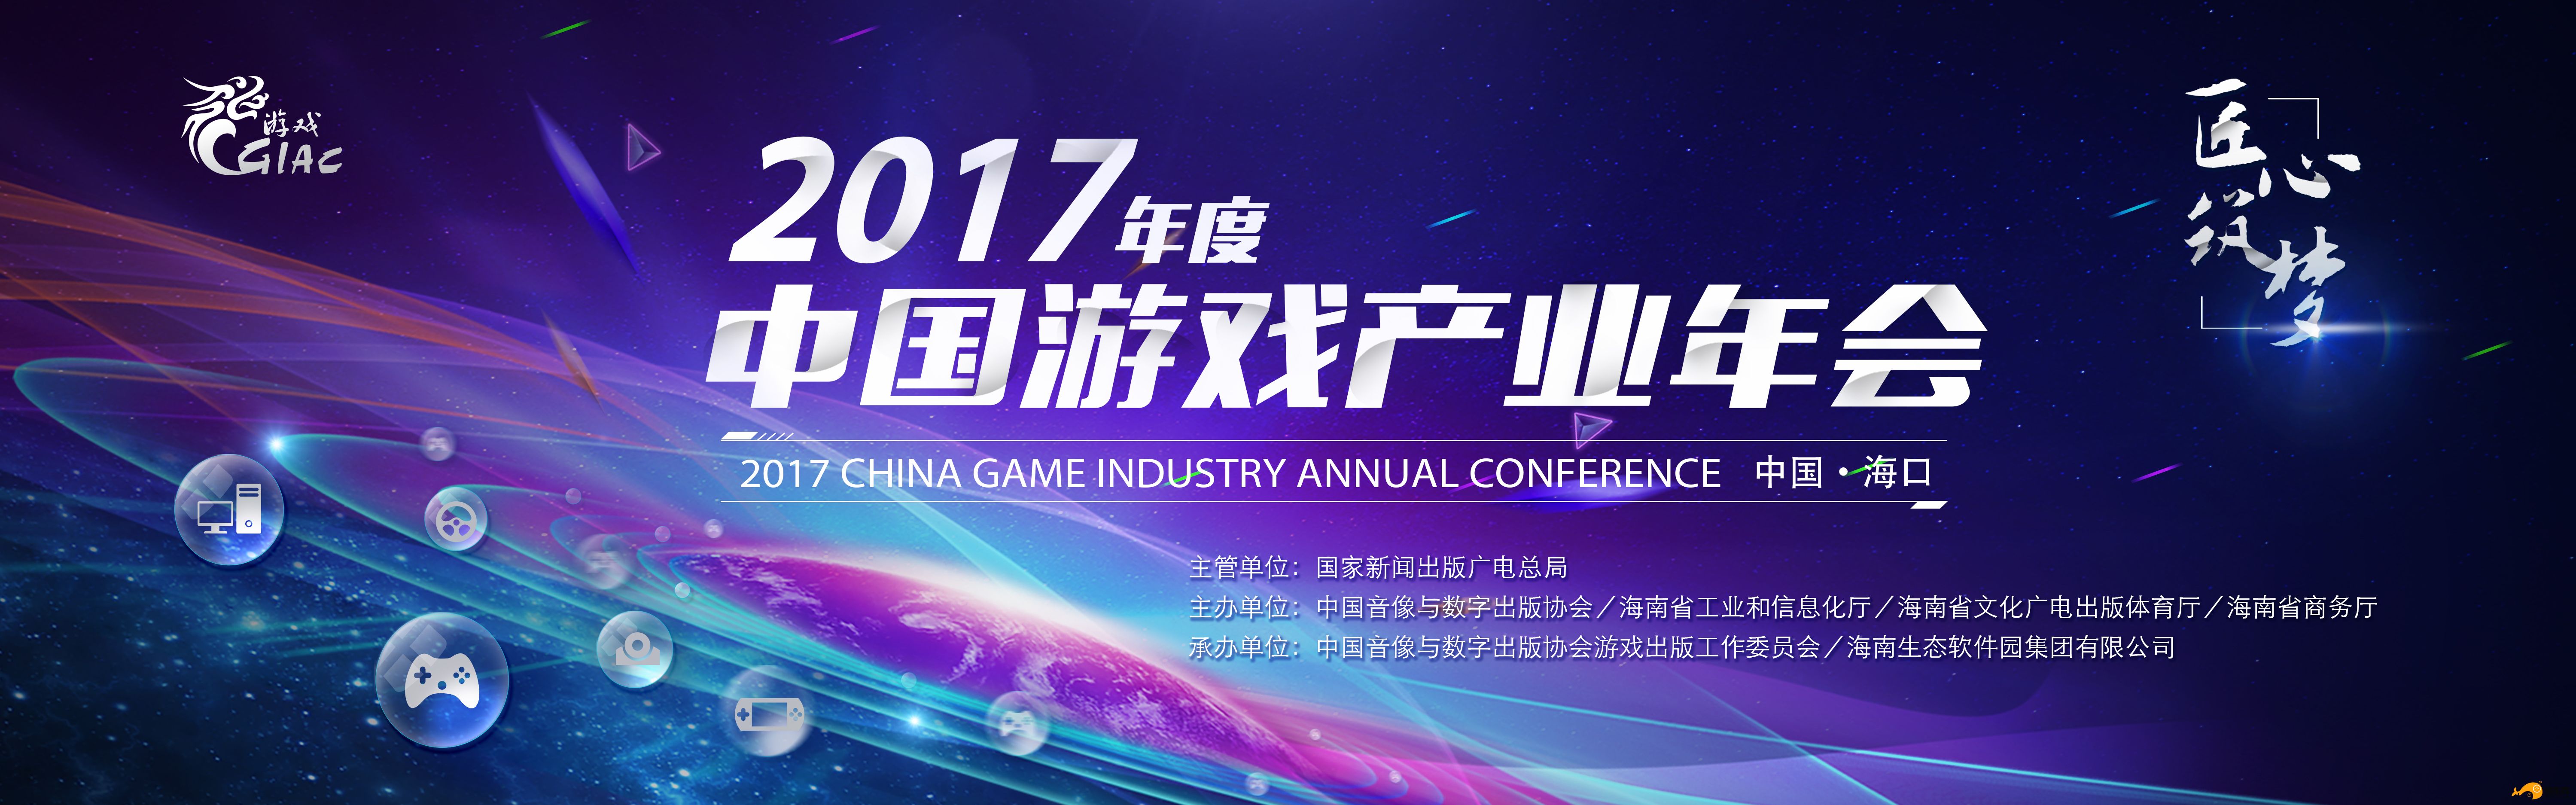 米哈游成为2017年度中国游戏产业年会主要赞助商